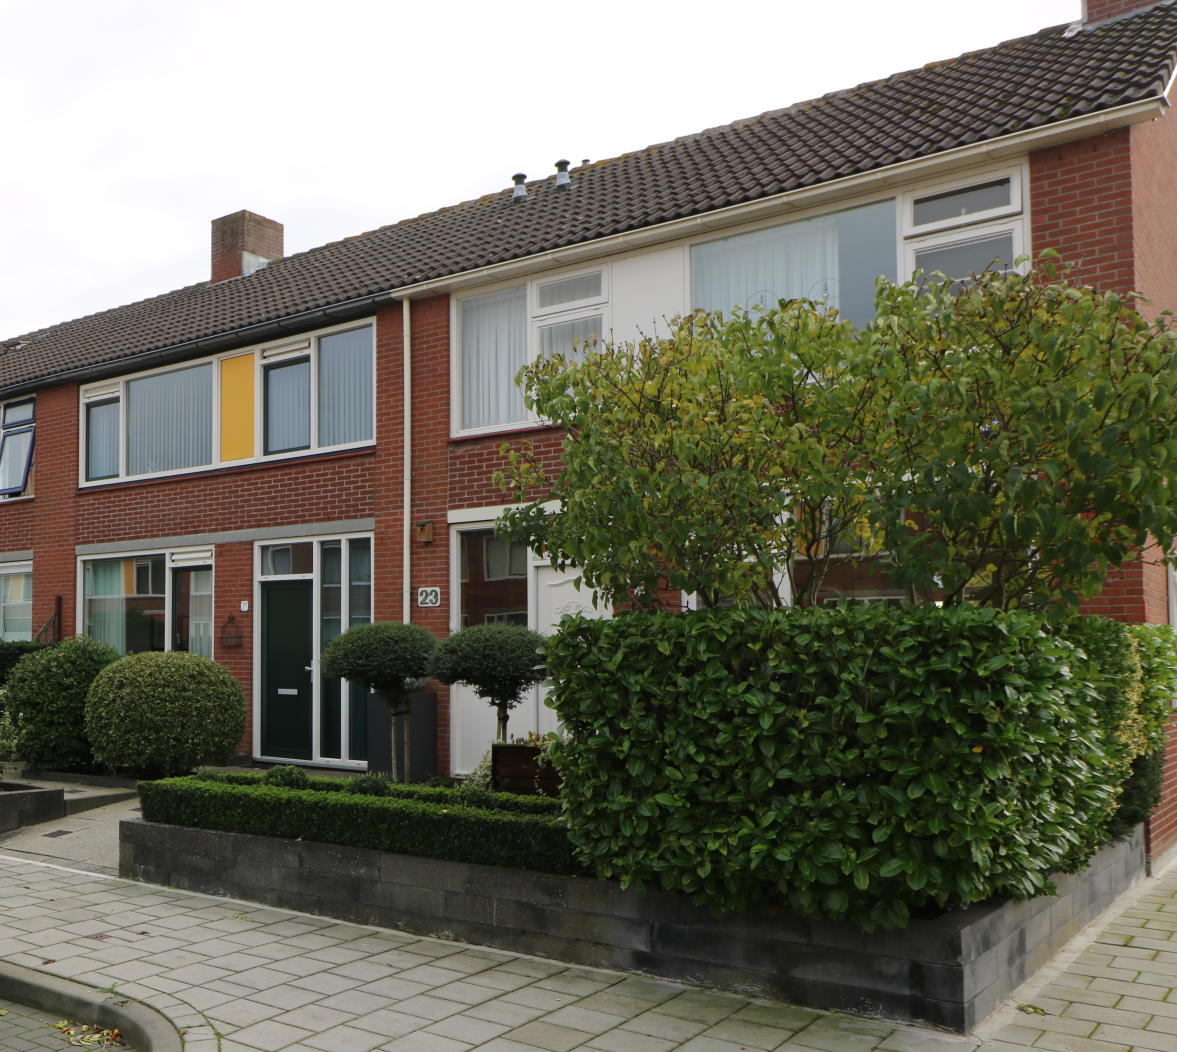 Grevelingenstraat 16, 4388 SB Oost-Souburg, Nederland